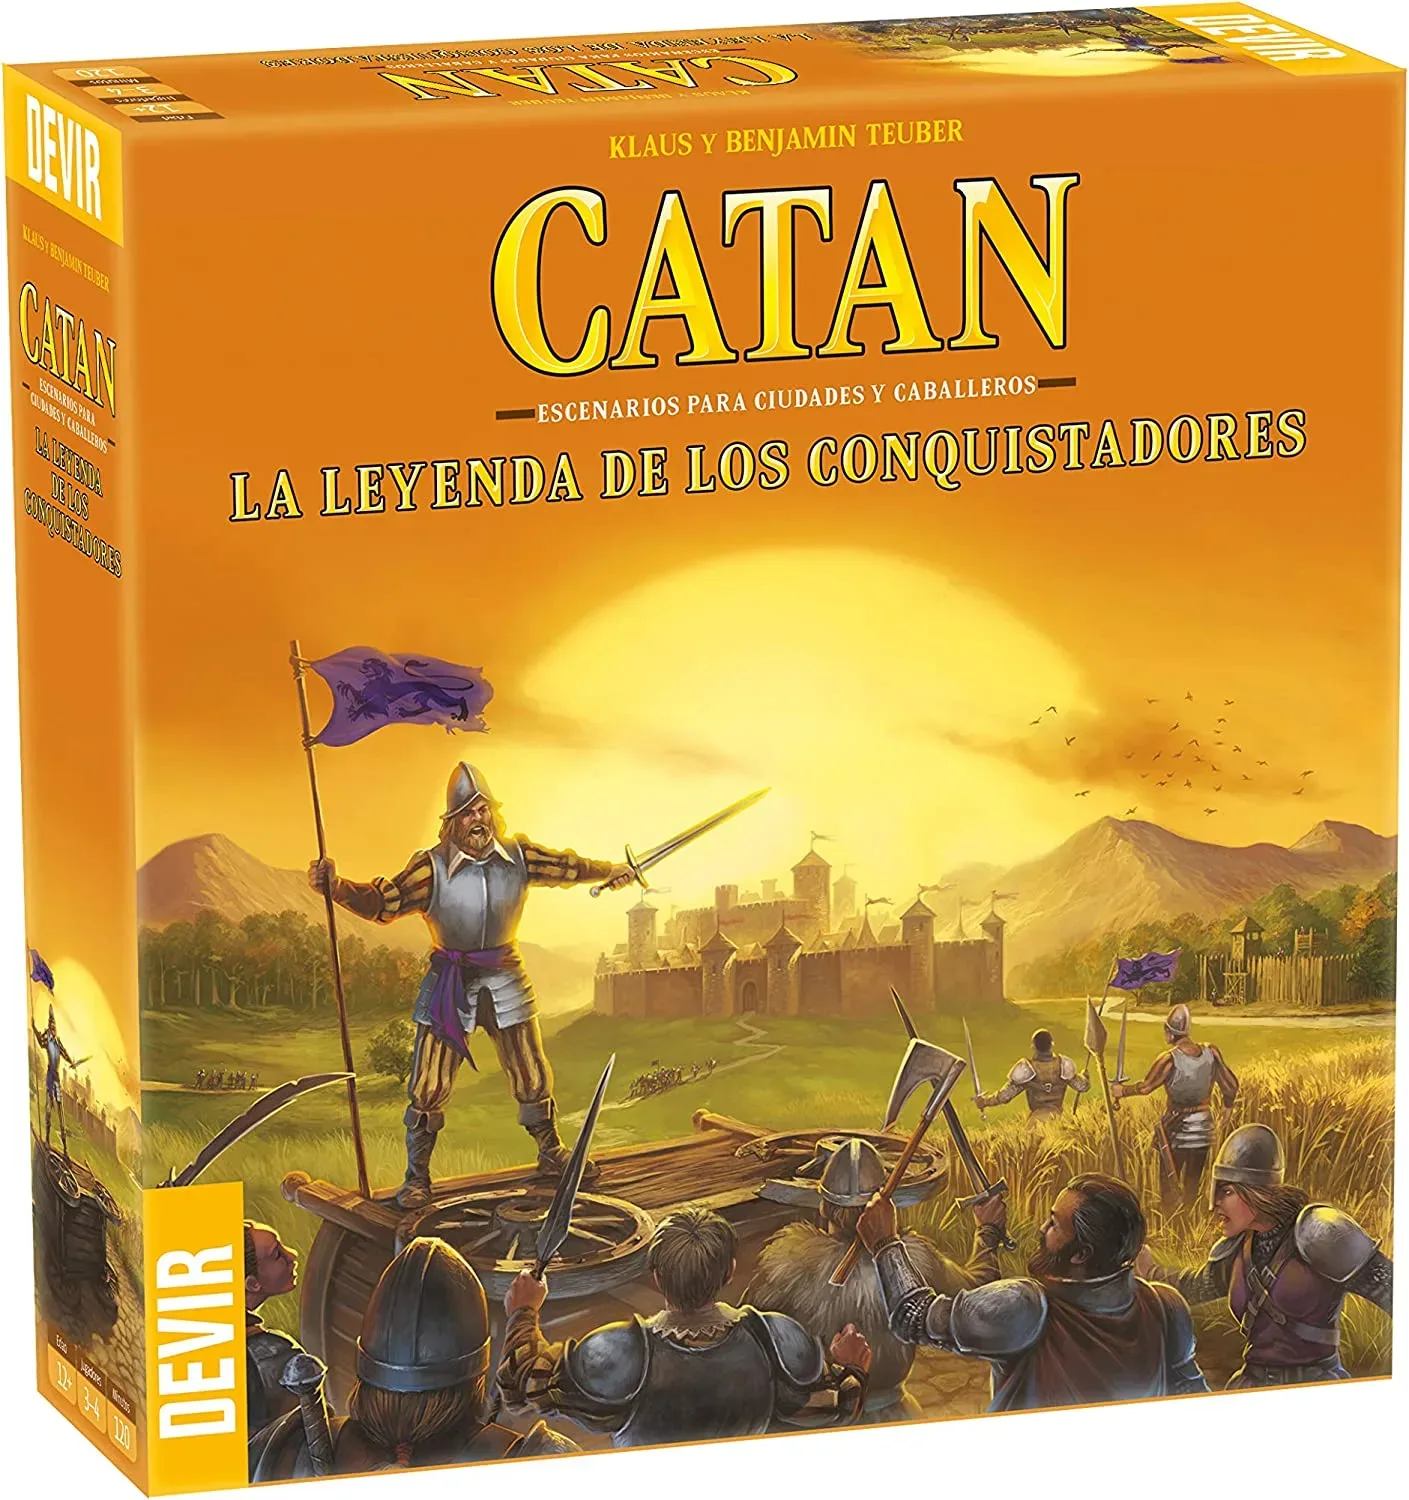 Ver categoría de catan: la leyenda de los conquistadores